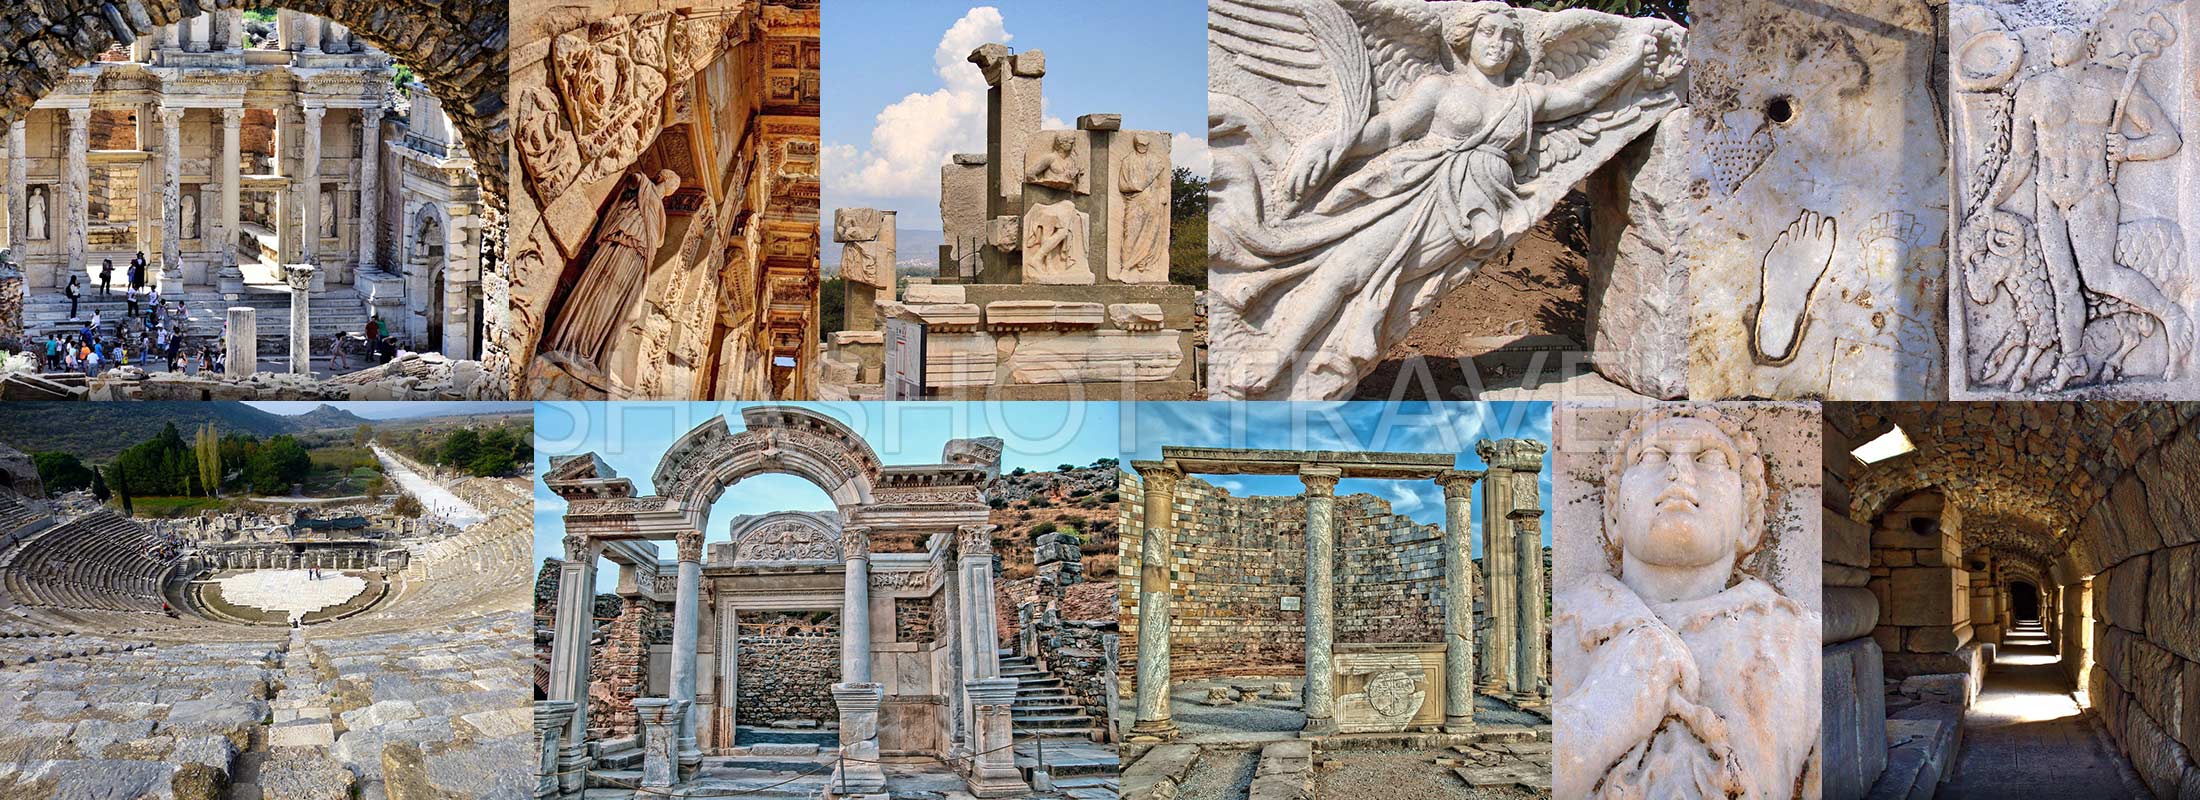 turquia-excursion-tours-6-dias-troya-pergamo-efeso-virgen-maria-casa-pamukkale-hierapolis-sirince